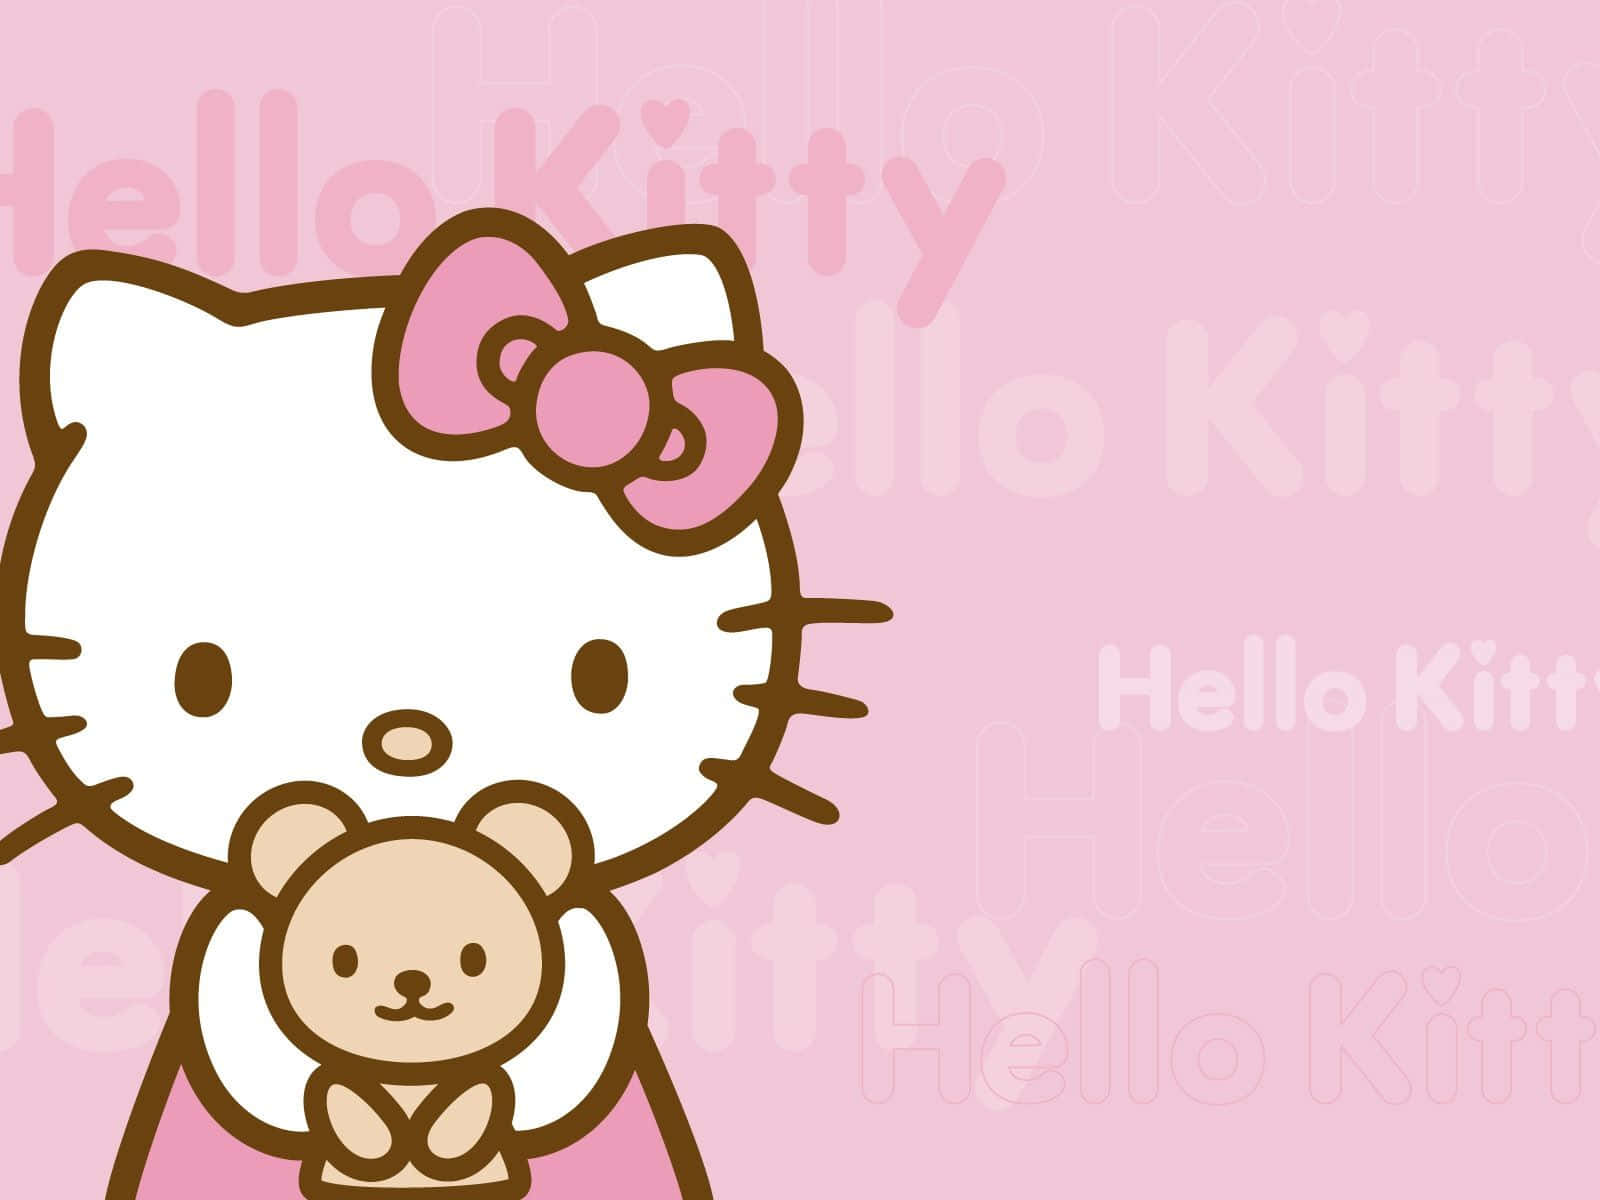 Sfondocarino Di Hello Kitty Con Orsacchiotto